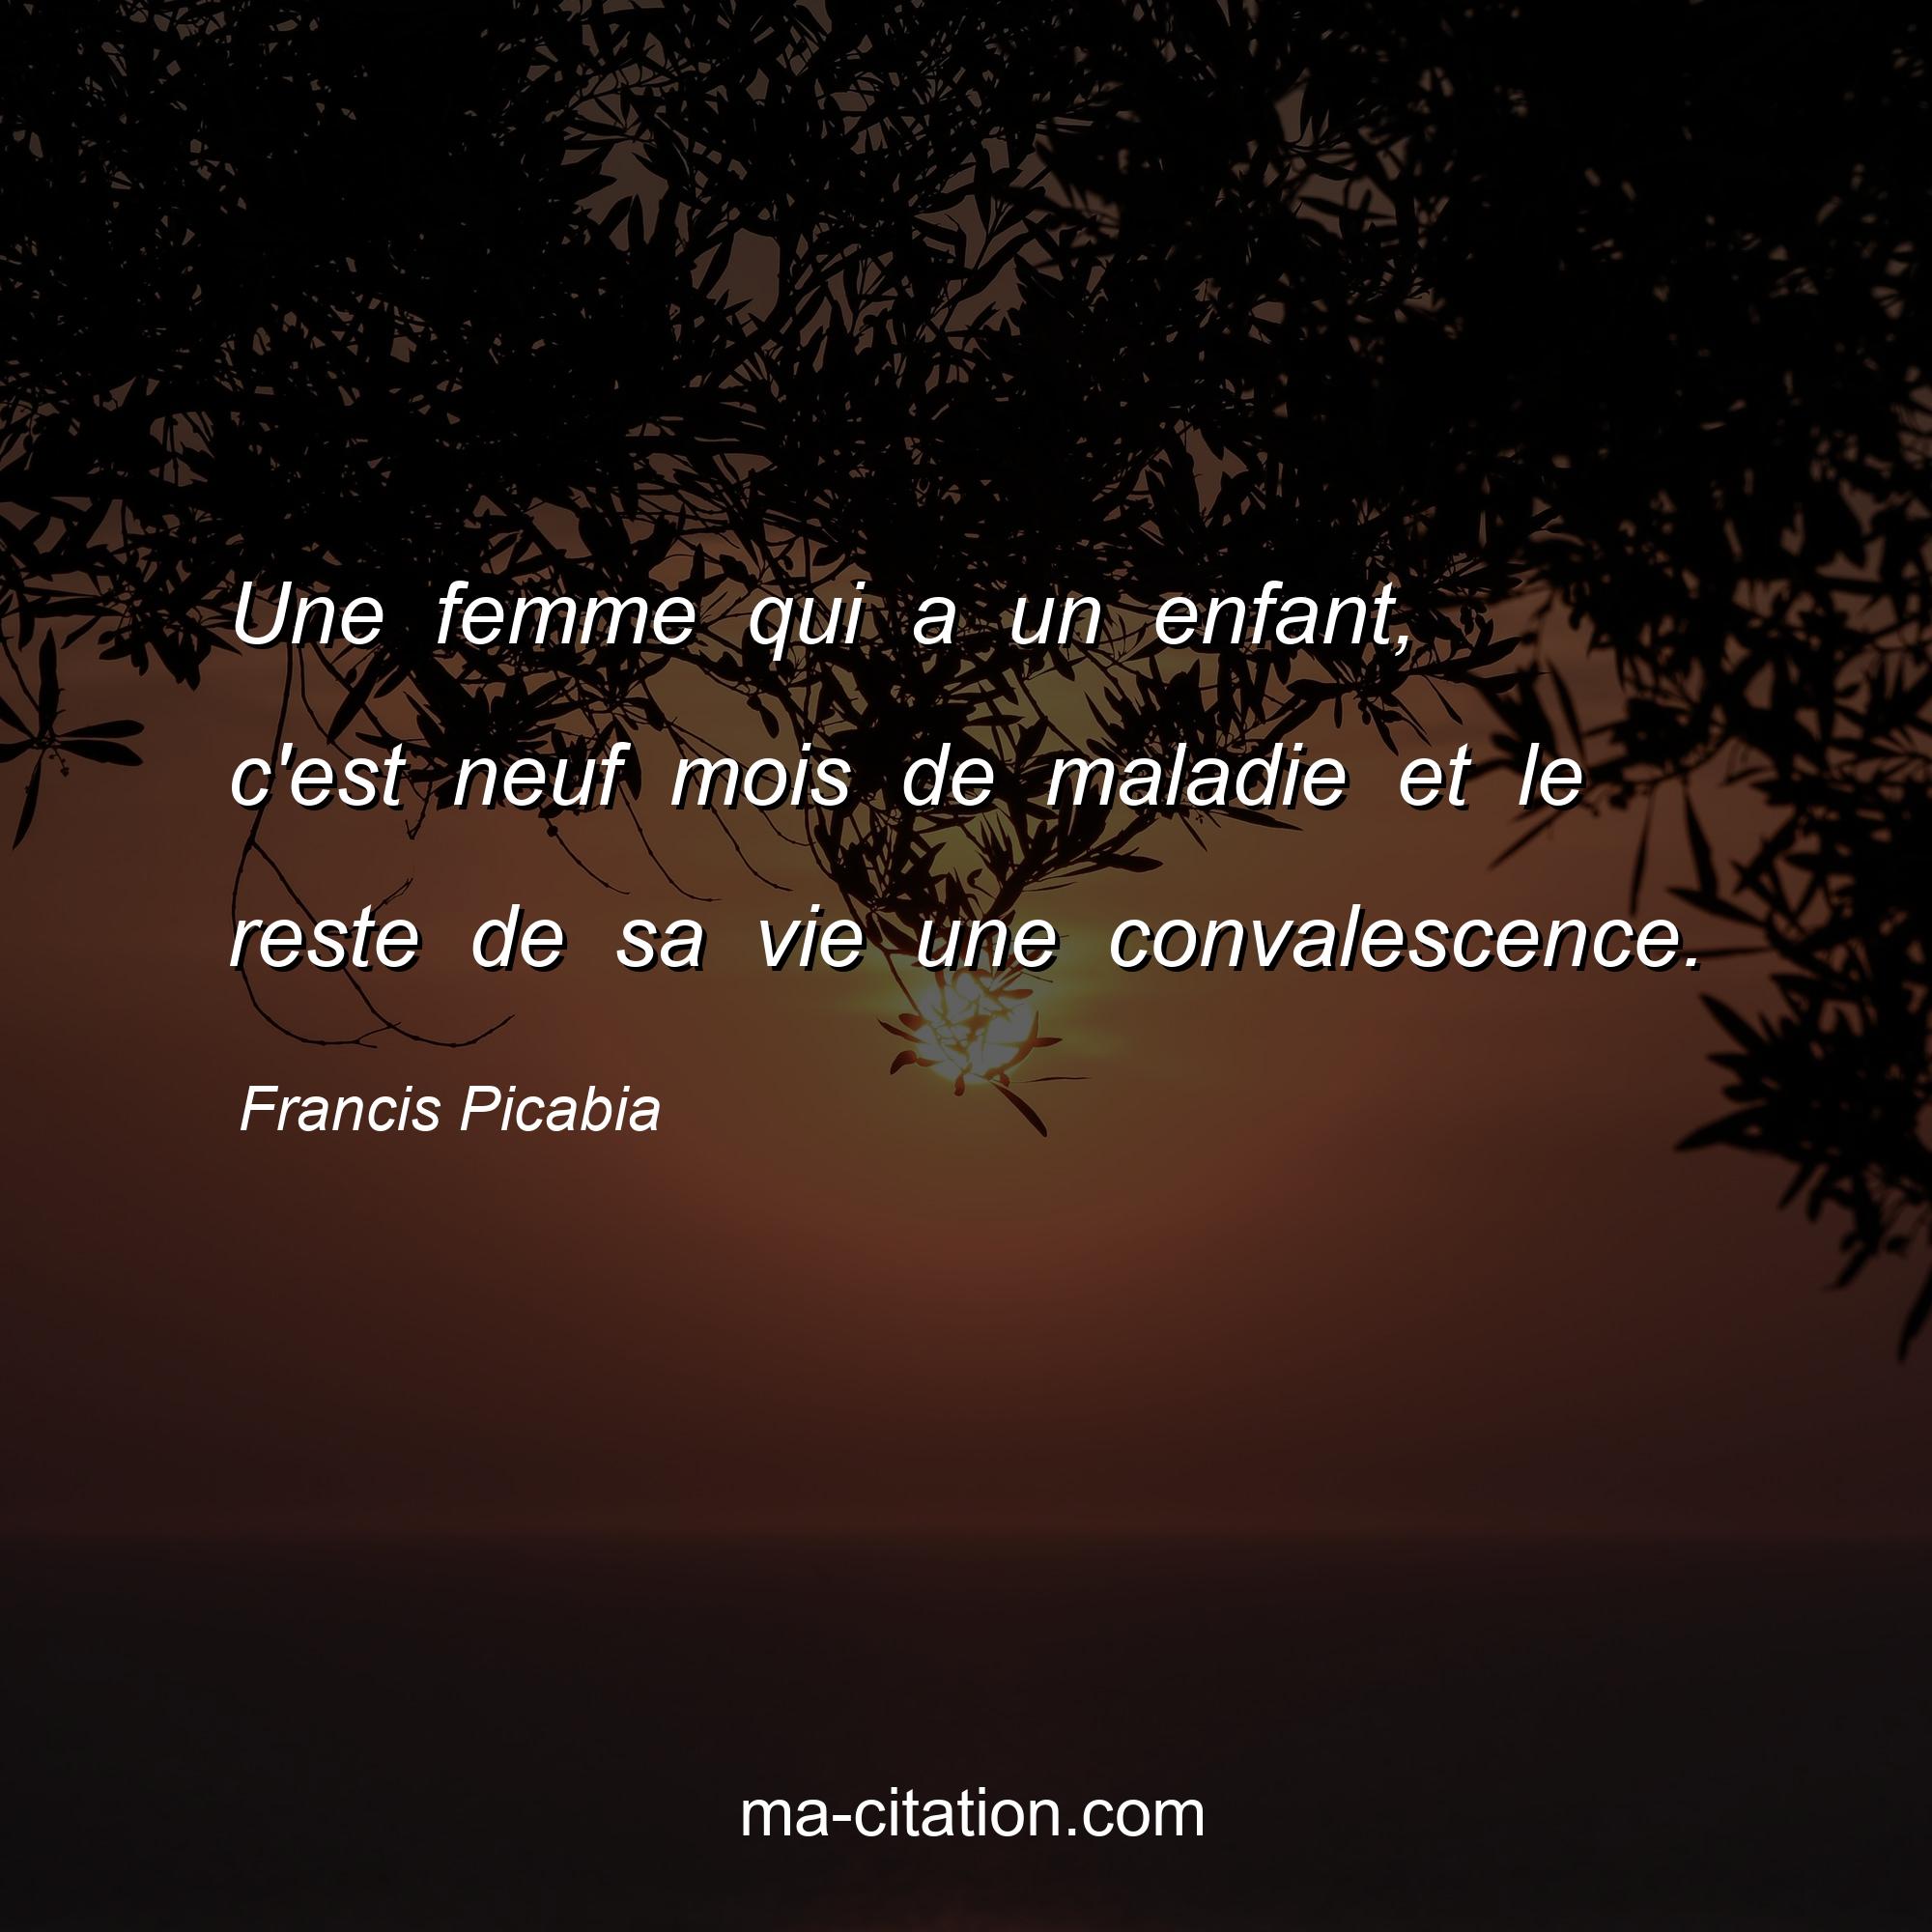 Francis Picabia : Une femme qui a un enfant, c'est neuf mois de maladie et le reste de sa vie une convalescence.